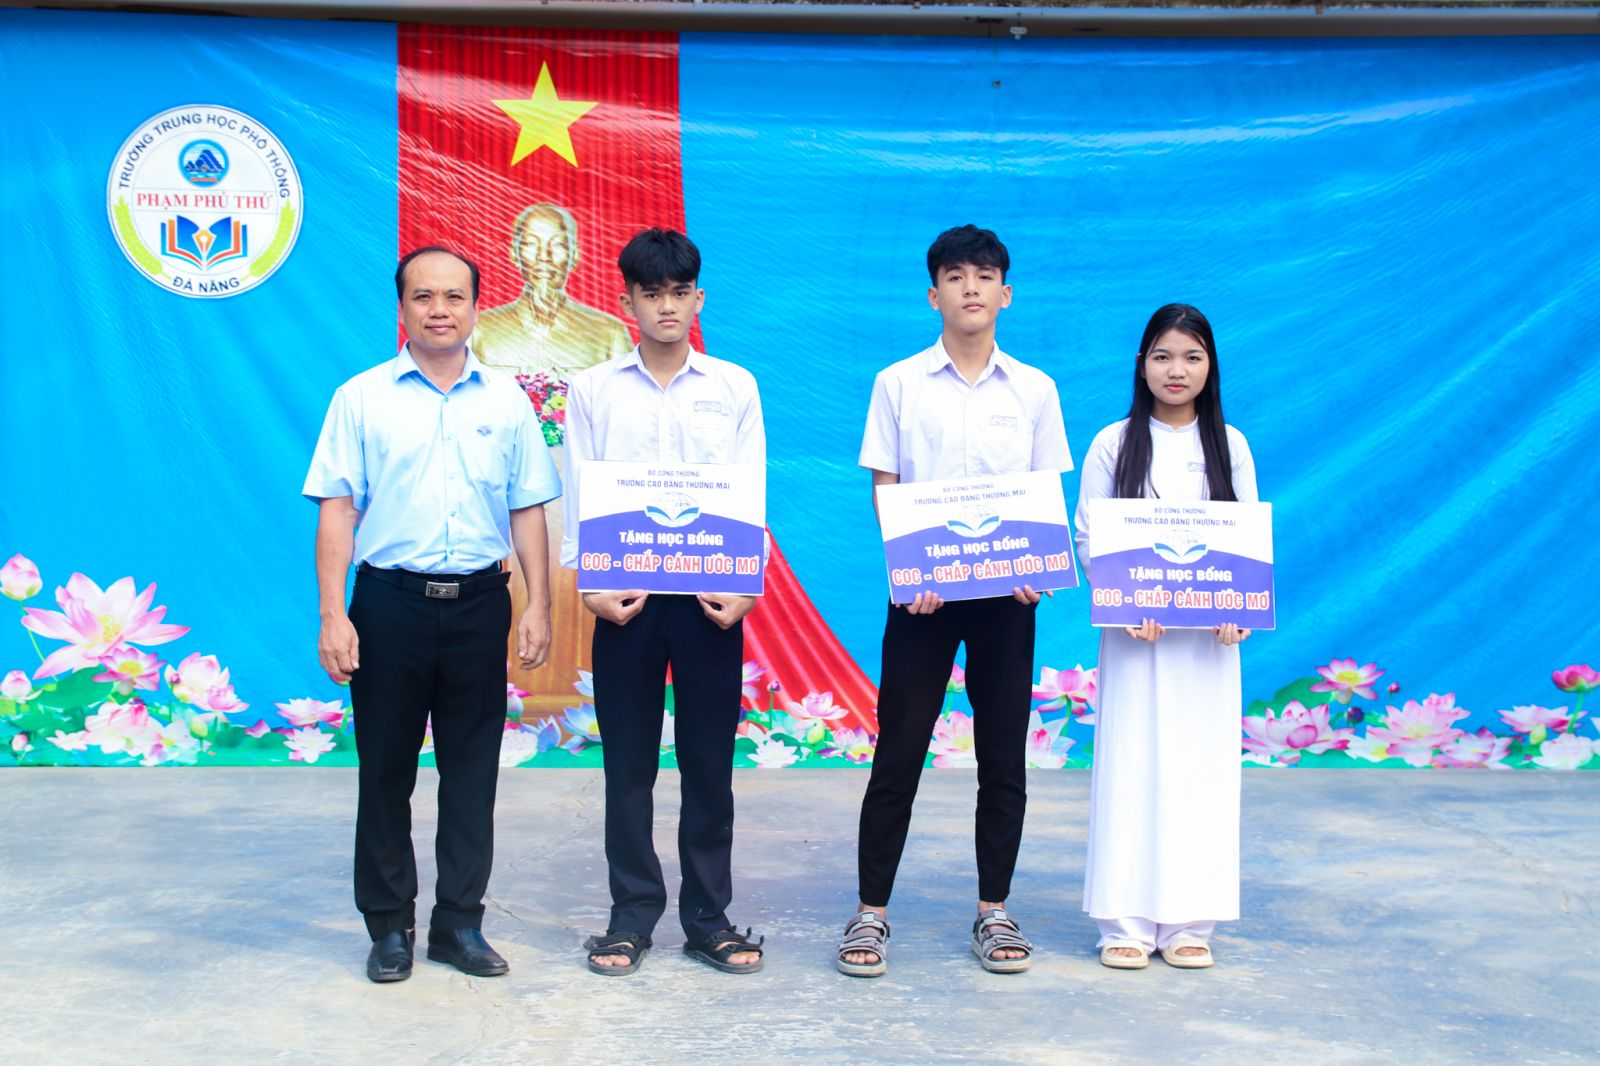 Trường Cao đẳng Thương mại trao tặng 10 học bổng “COC - CHẮP CÁNH ƯỚC MƠ” cho học sinh THPT Phạm Phú Thứ - Đà Nẵng và THPT Huỳnh Ngọc Huệ - Quảng Nam